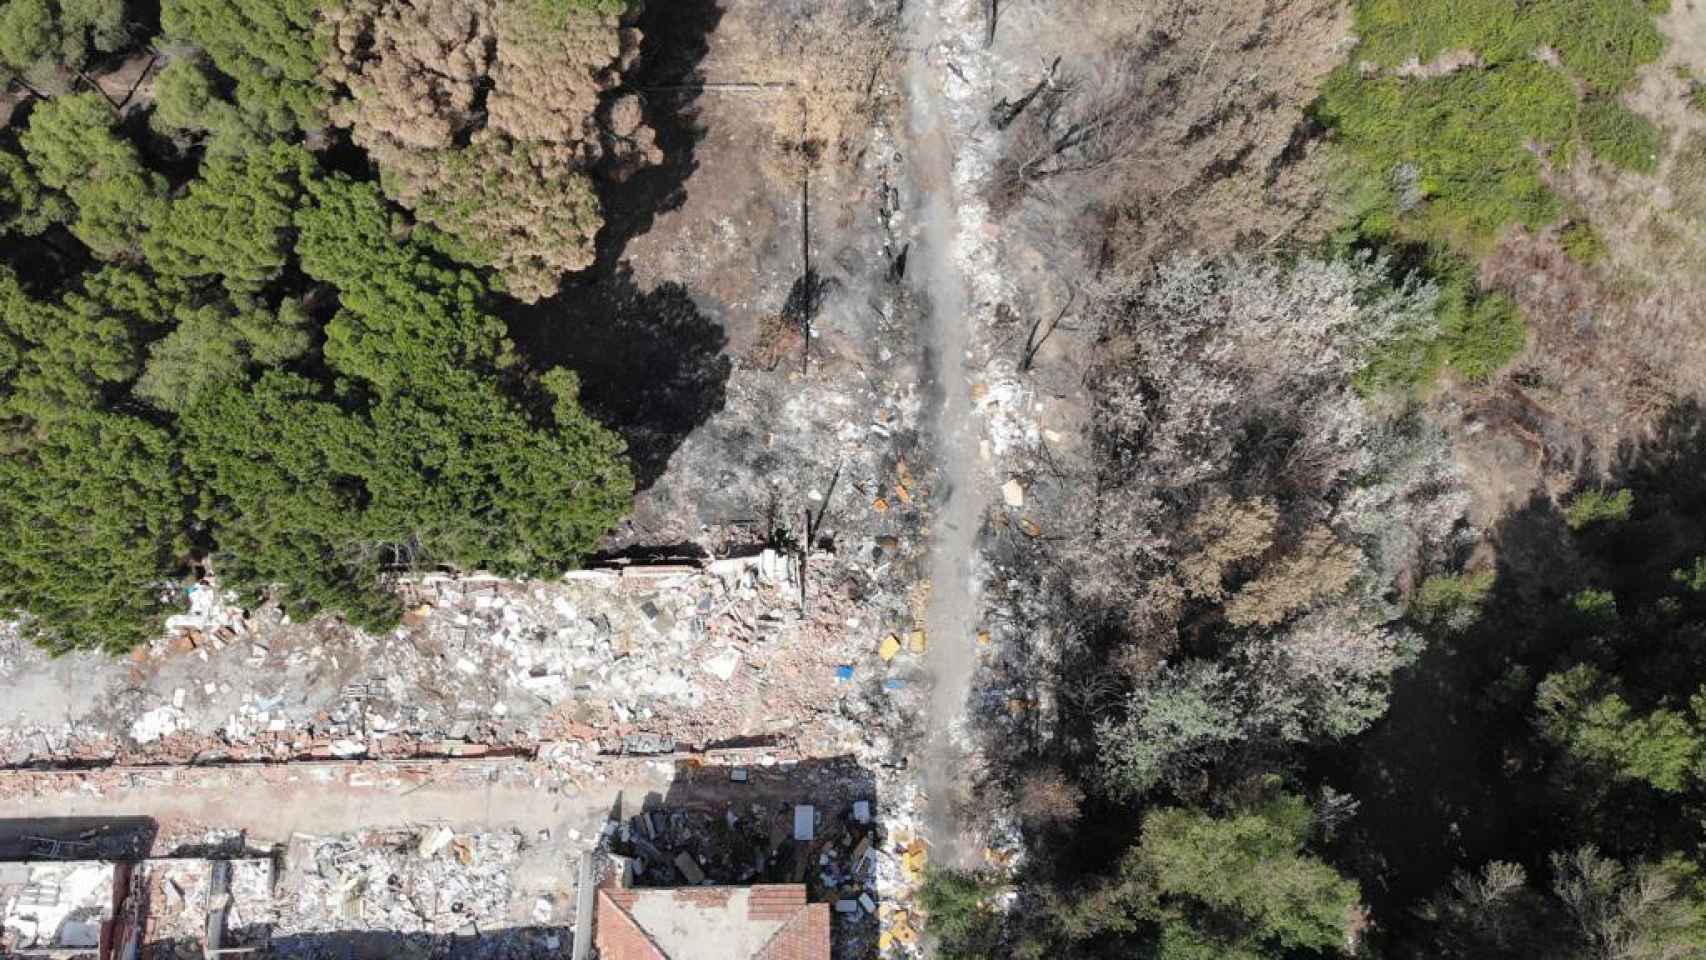 Imagen aérea de un dron en una zona con basura acumulada